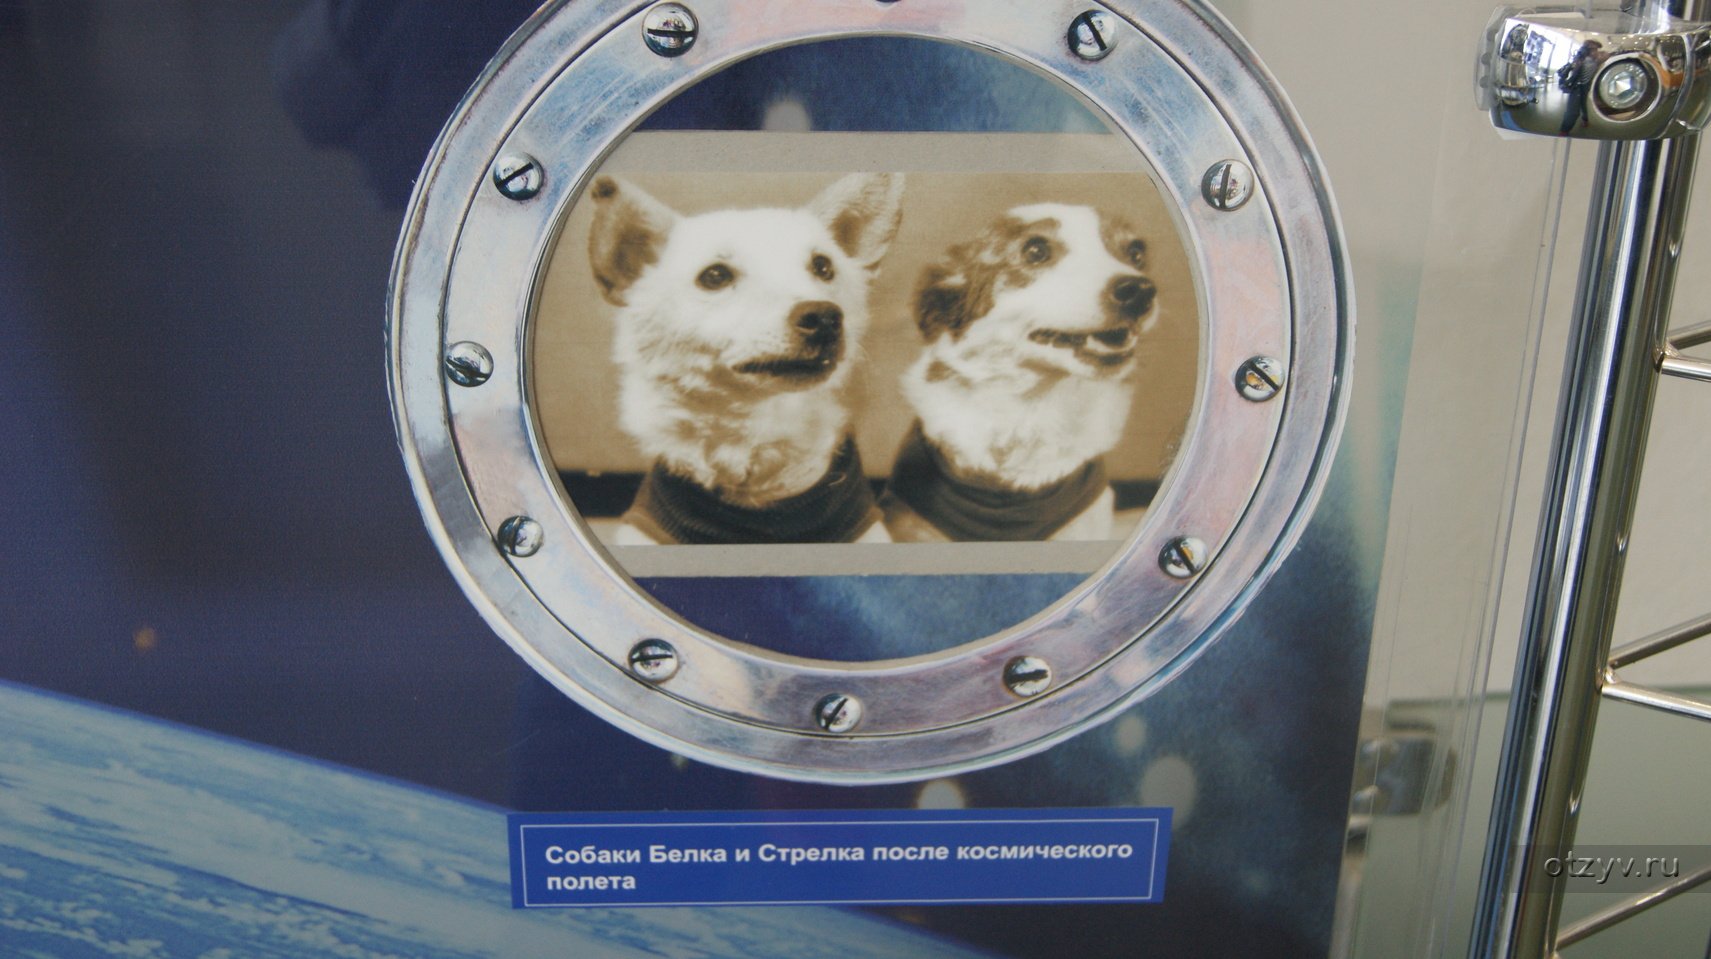 Спутник 5 собаки. Спутник-5 космический аппарат белка и стрелка. Белка и стрелка в космосе. Белка и стрелка в ракете. Собака в иллюминаторе.